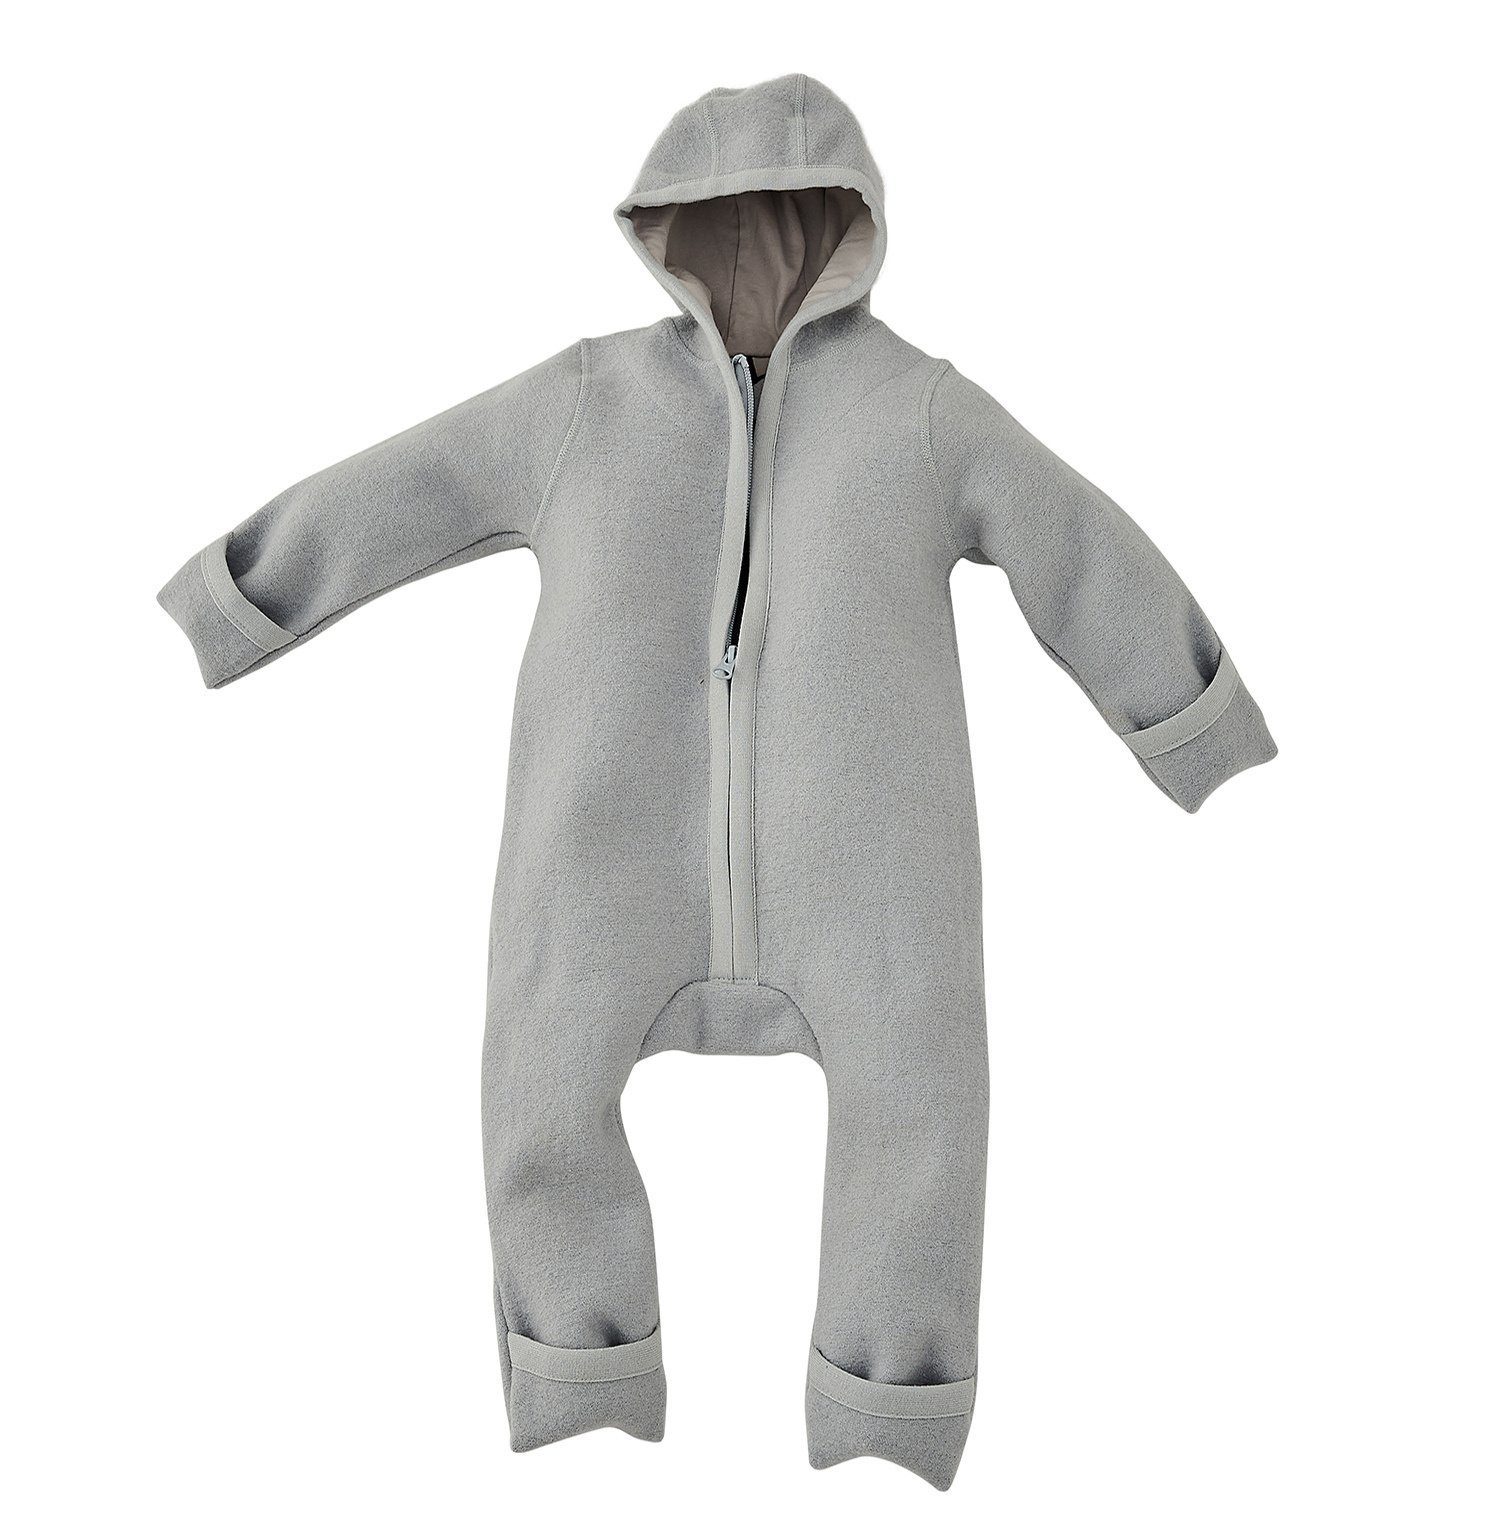 Alavya Panda Overall WALKOVERALL, Baby Reißverschluss, aus Natur Woll-Anzug für Kleinkind Walk Wollfleece mit Grau Baby Bio-Schurwolle 100% Wollwalk-Overalls und